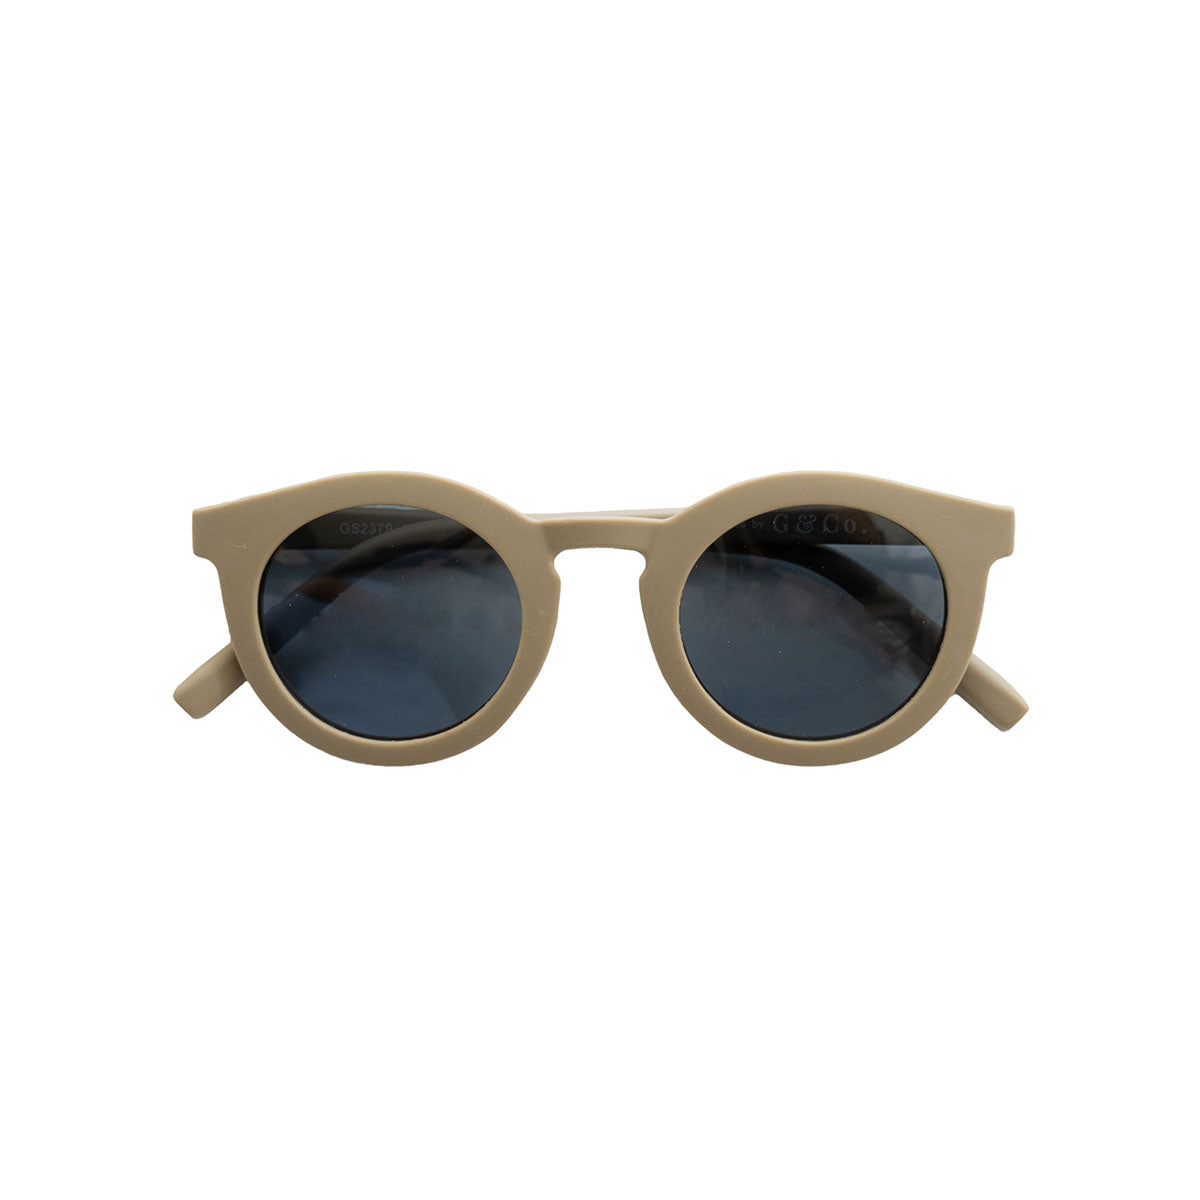 De Grech & co. zonnebril classic adult in de kleur stone is de perfecte keuze voor trendy en modebewuste moeders en hun mini-me’s. De zonnebril is namelijk ook beschikbaar voor kinderen! VanZus